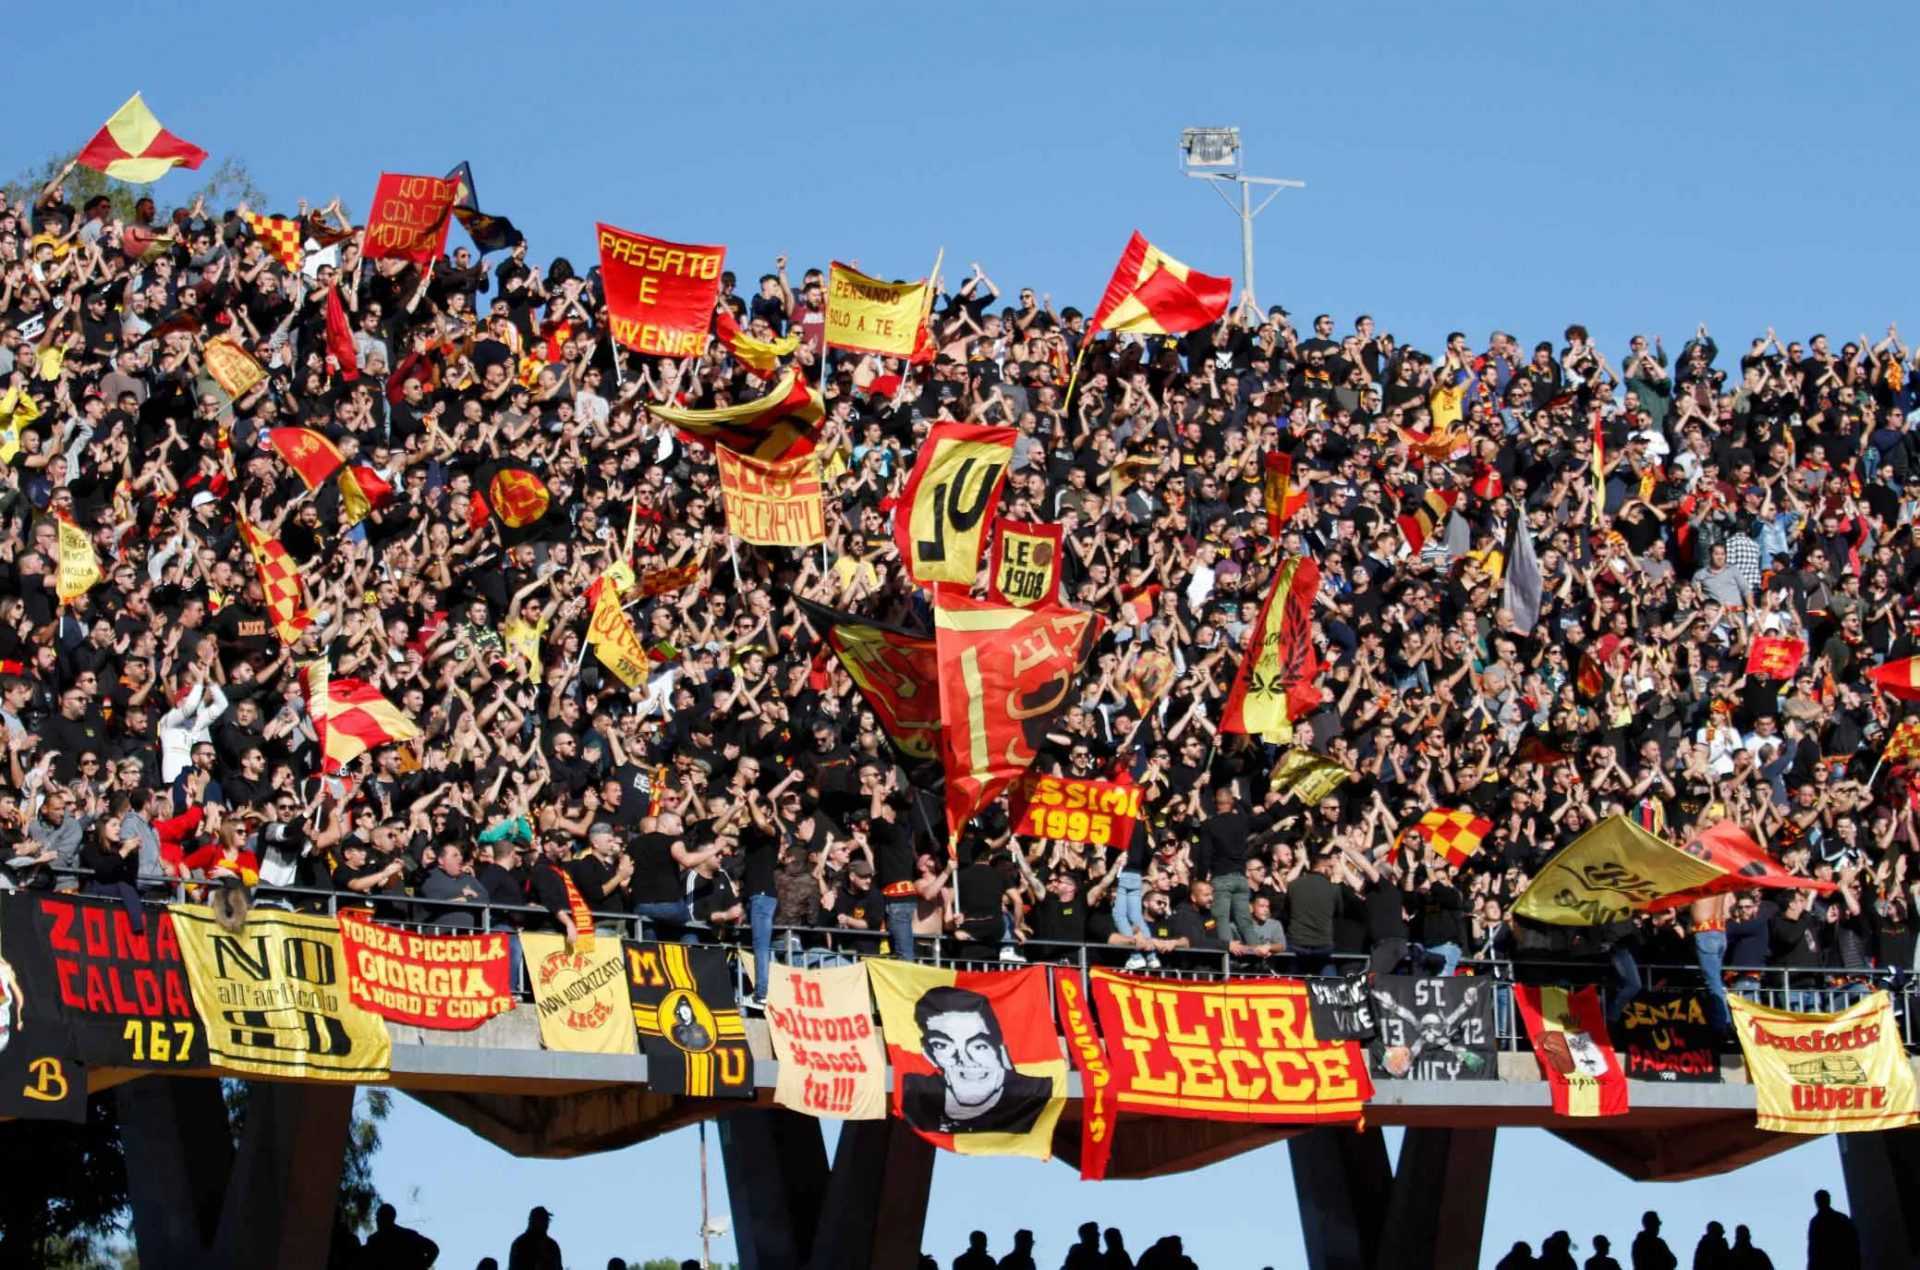 Le pagelle di Roma-Lecce (2-1): Lukaku completa la rimonta thriller